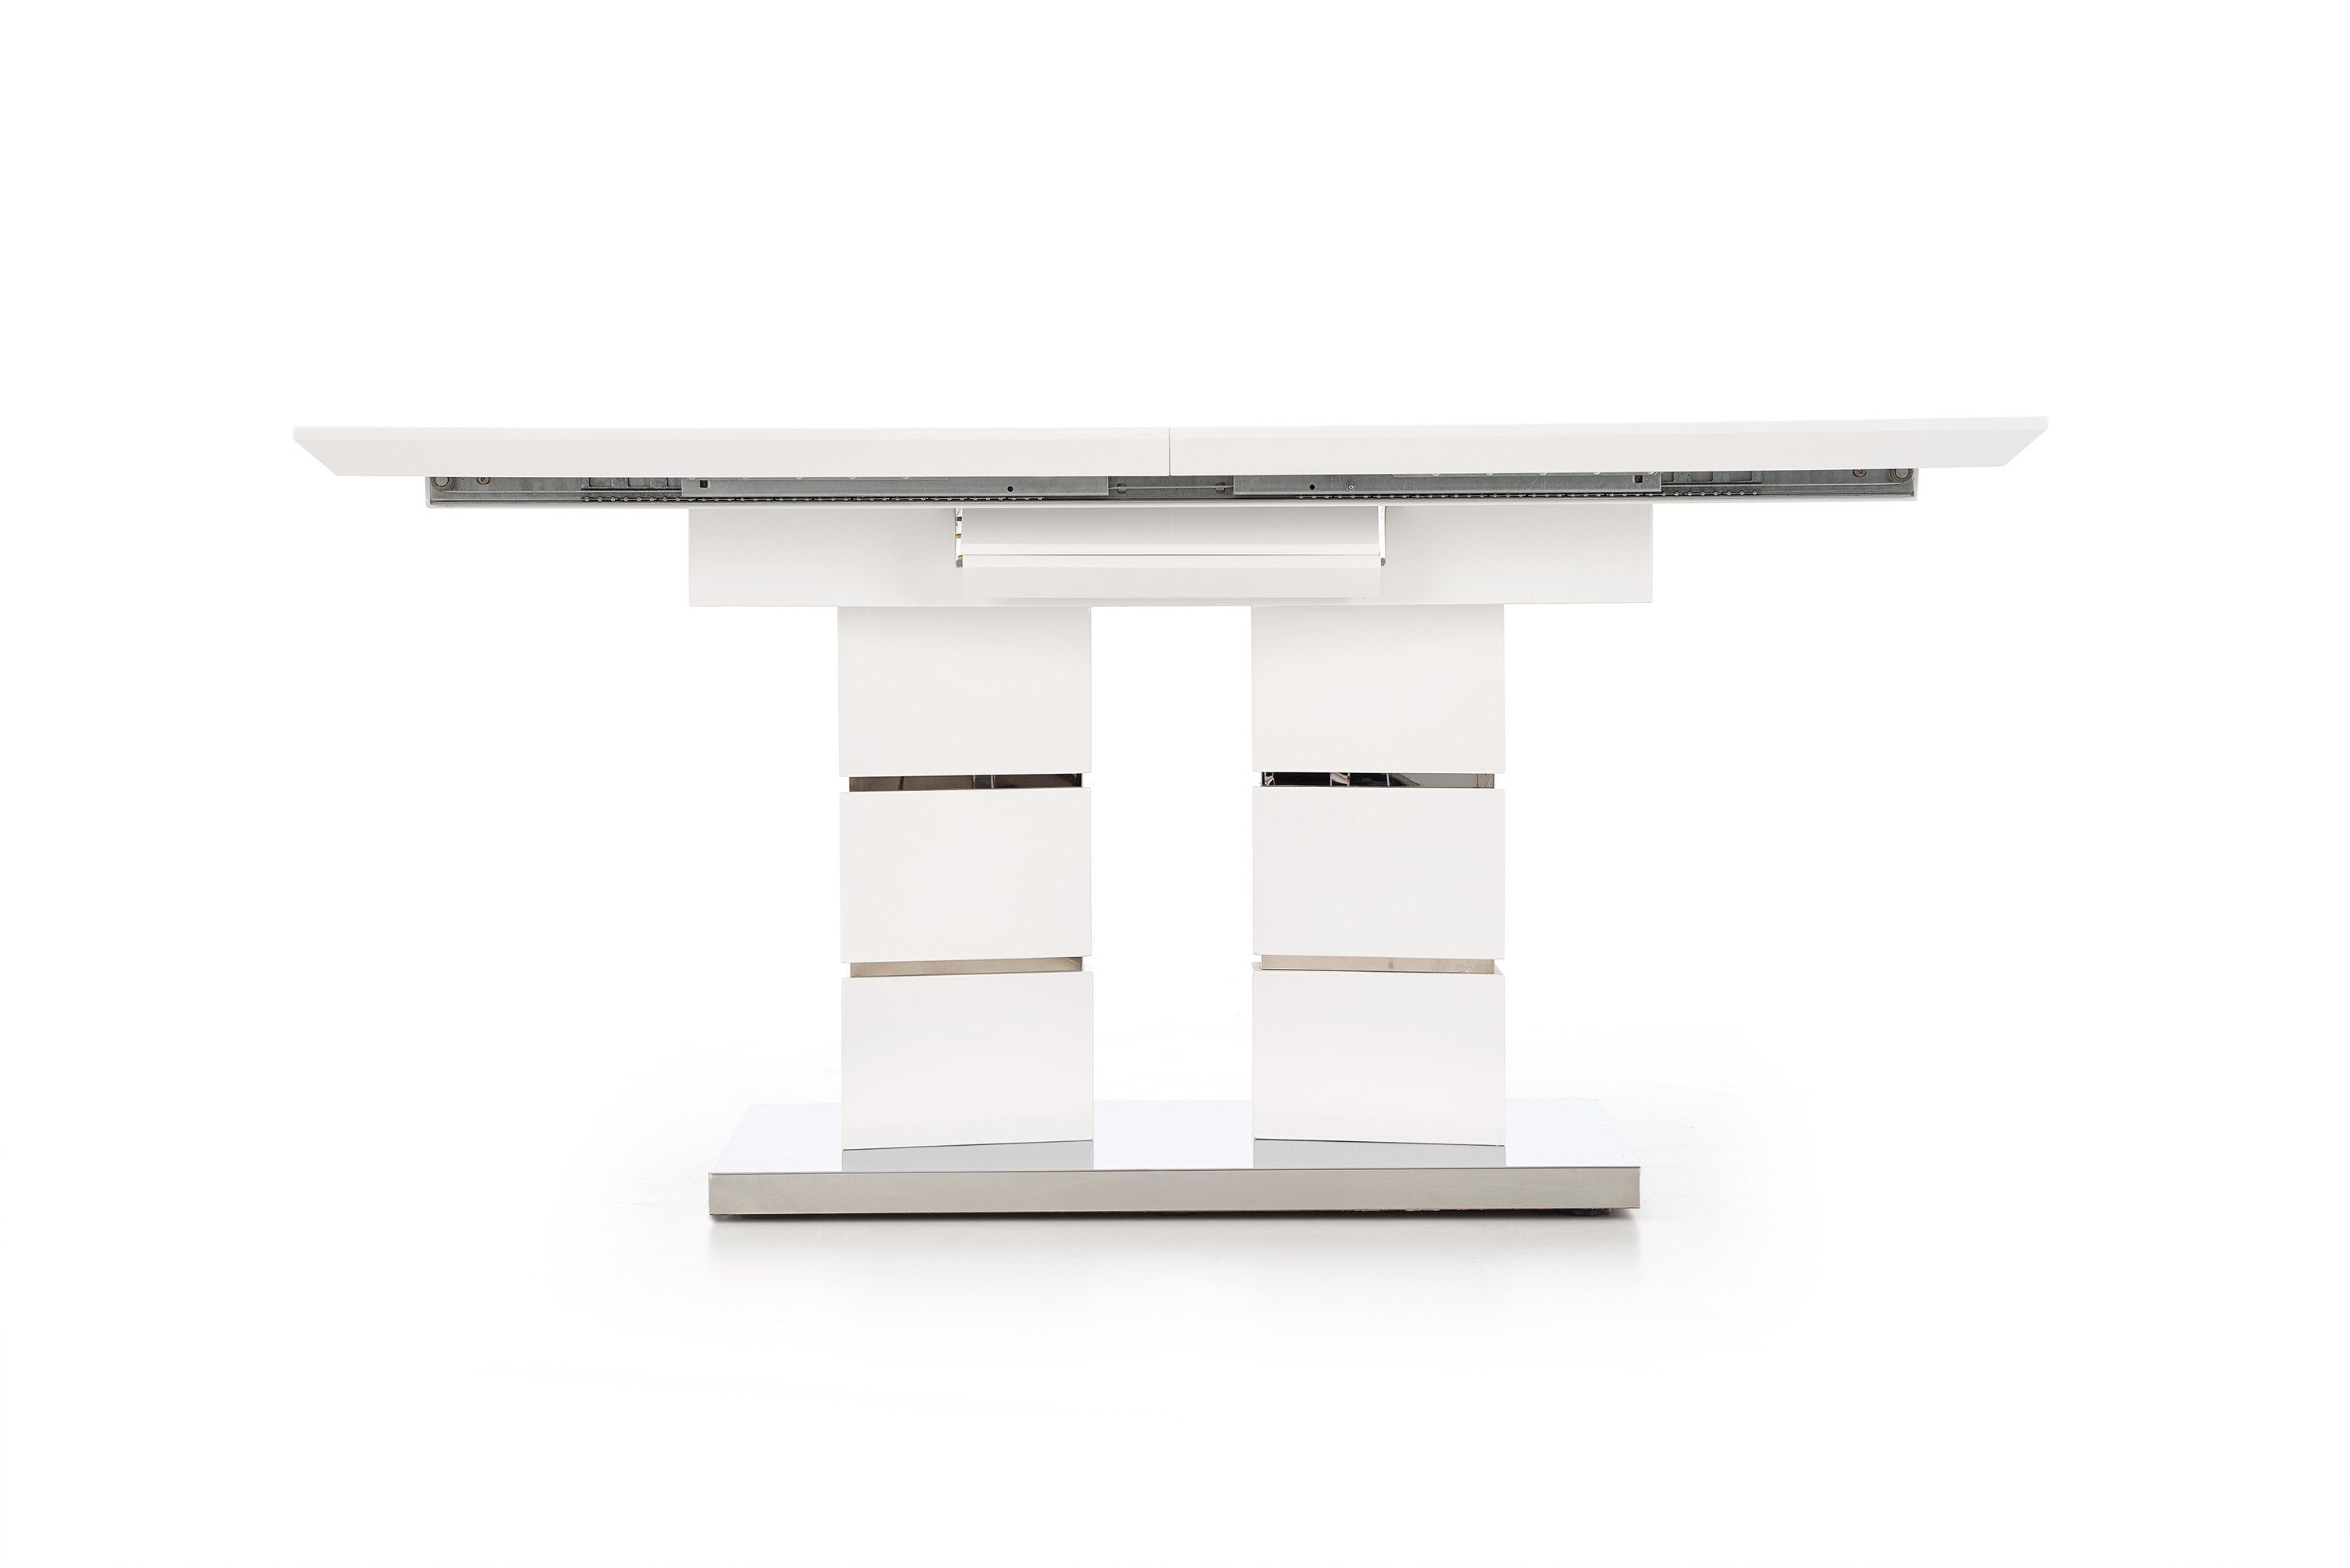 ausziehbar bis 200 Design Esstisch Esstisch HA-333 cm Weiß Hochglanz 160 Tisch designimpex